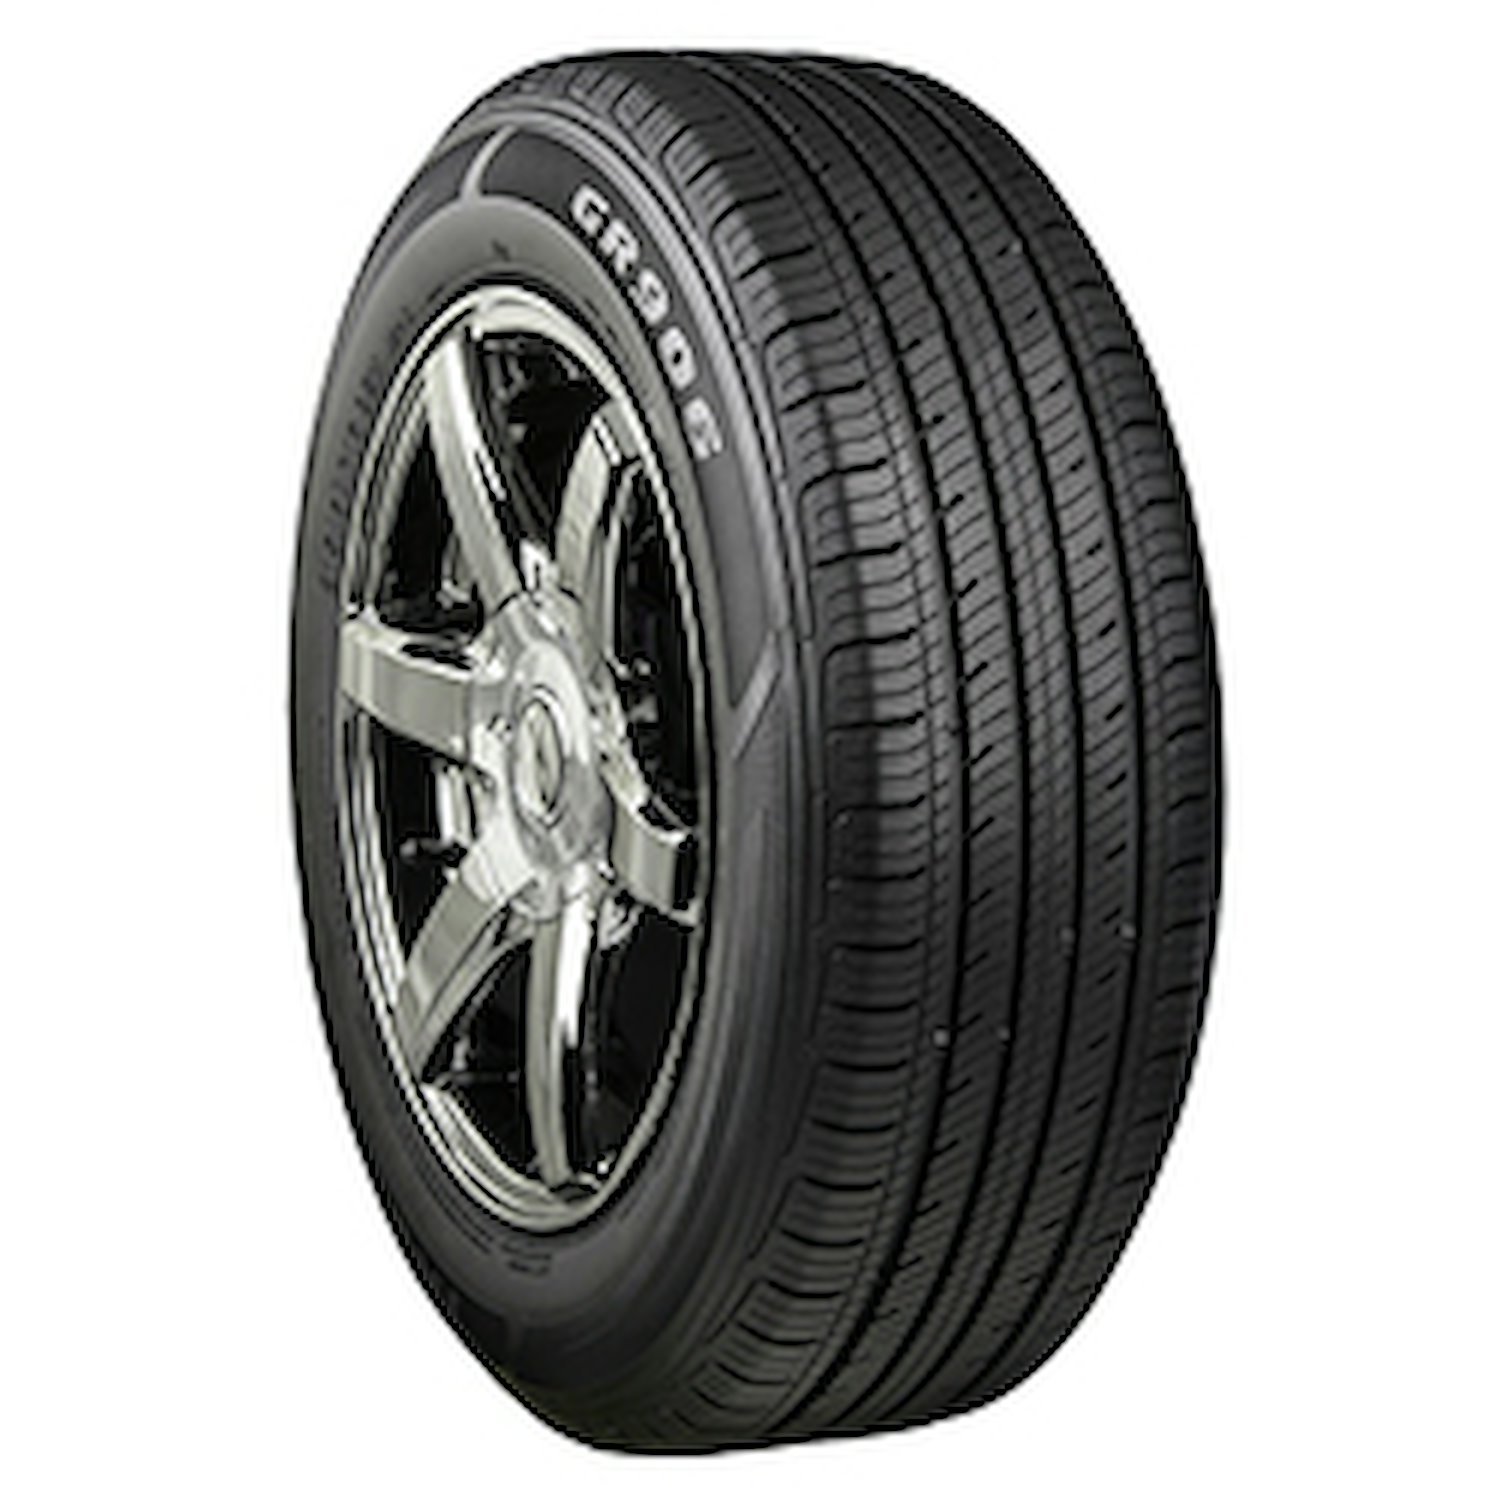 GR906 Tire, 205/60R15 91H